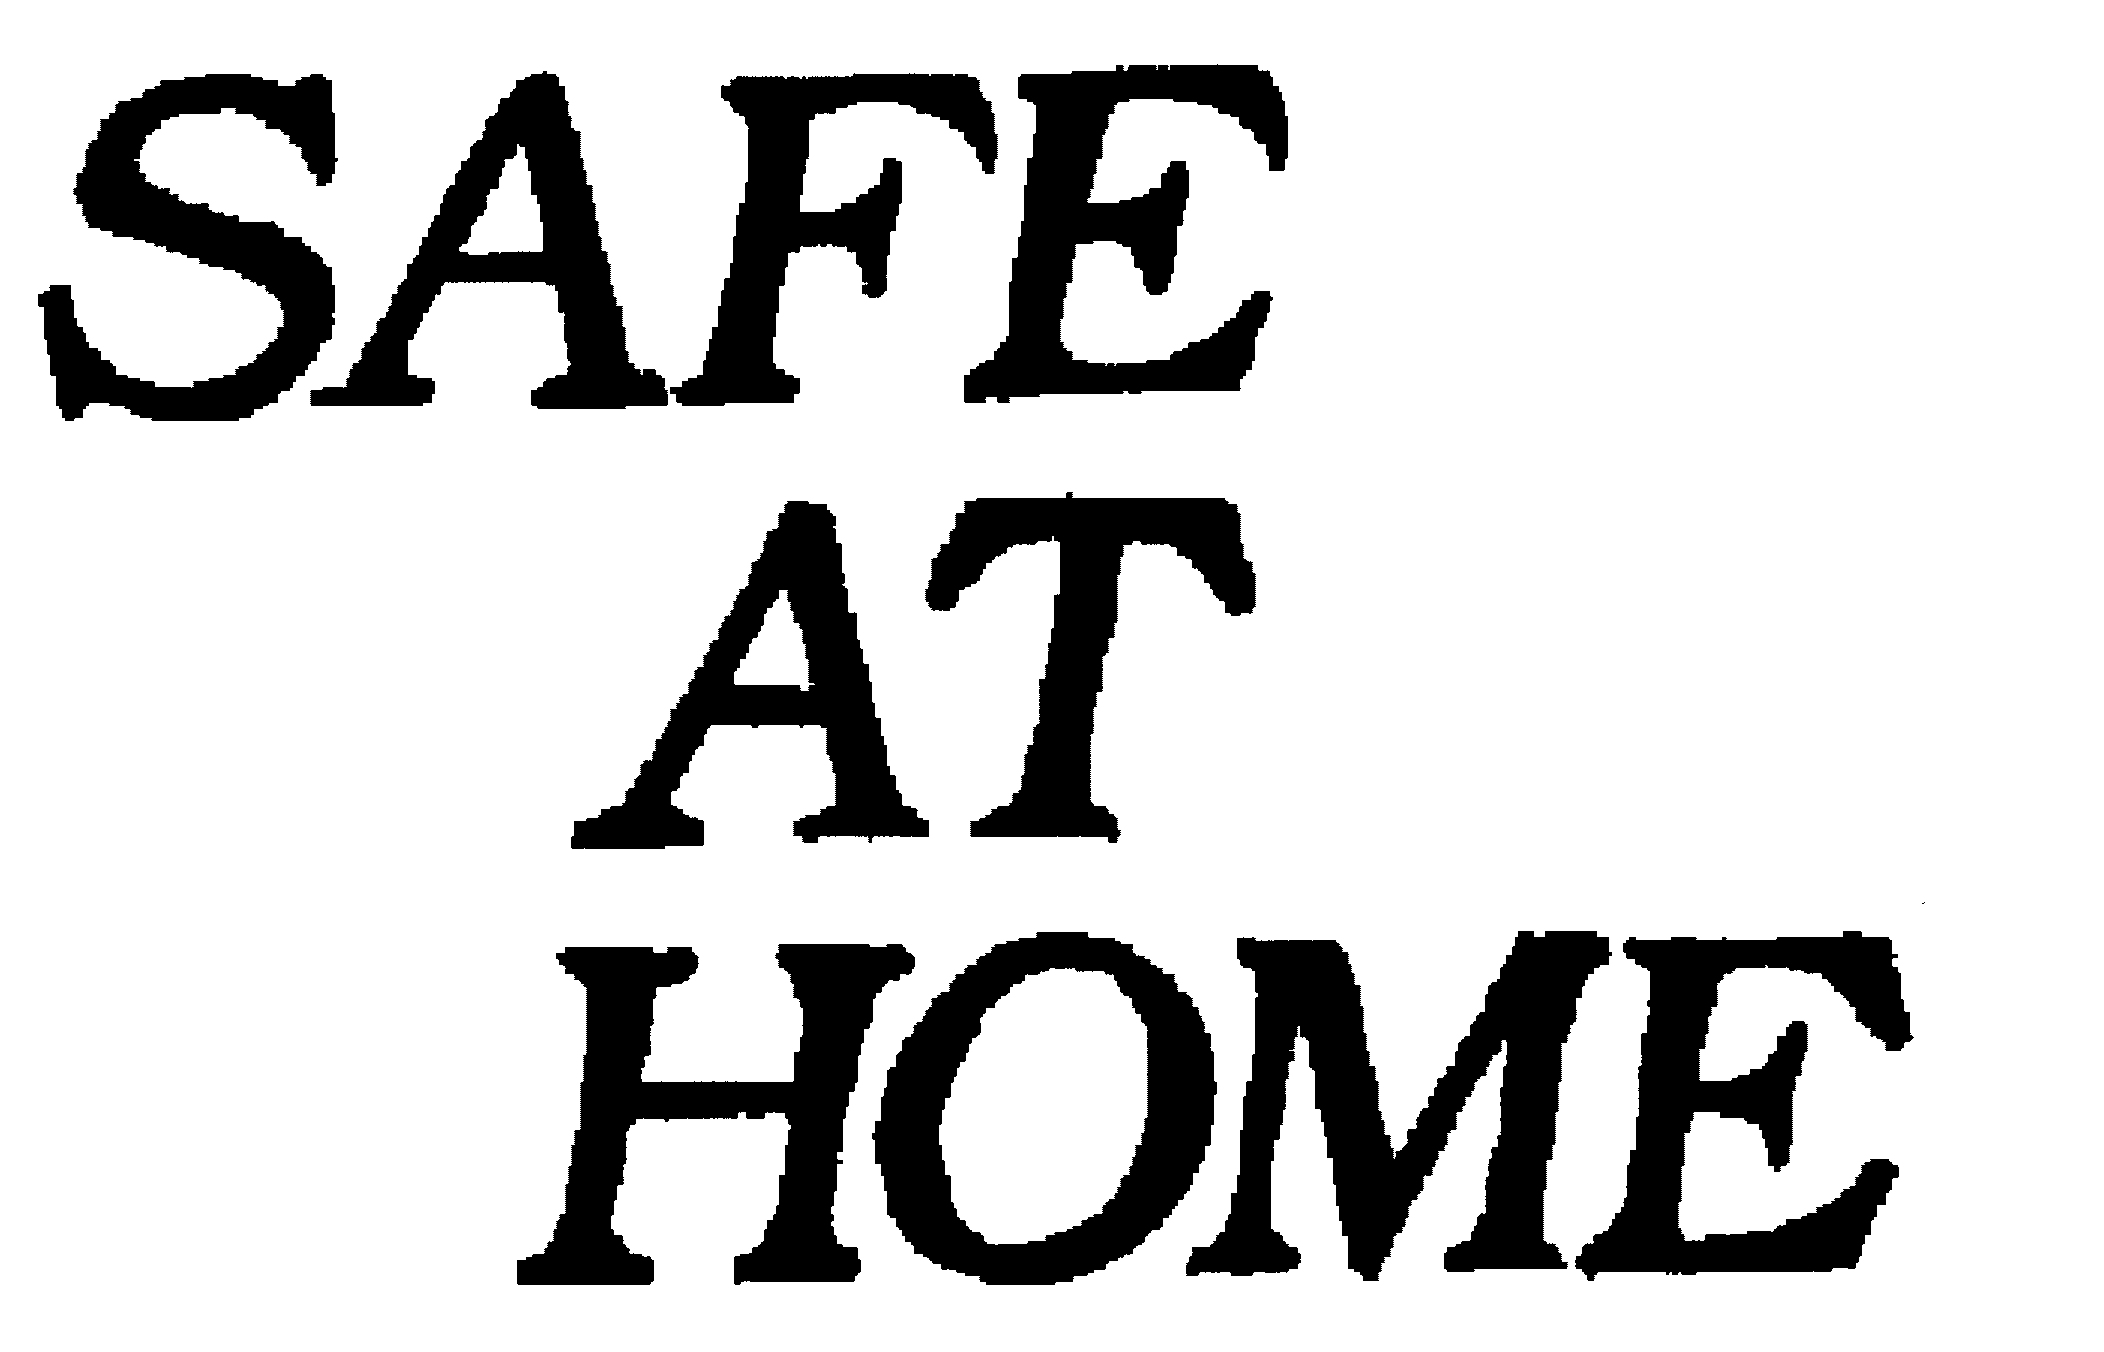 SAFE AT HOME